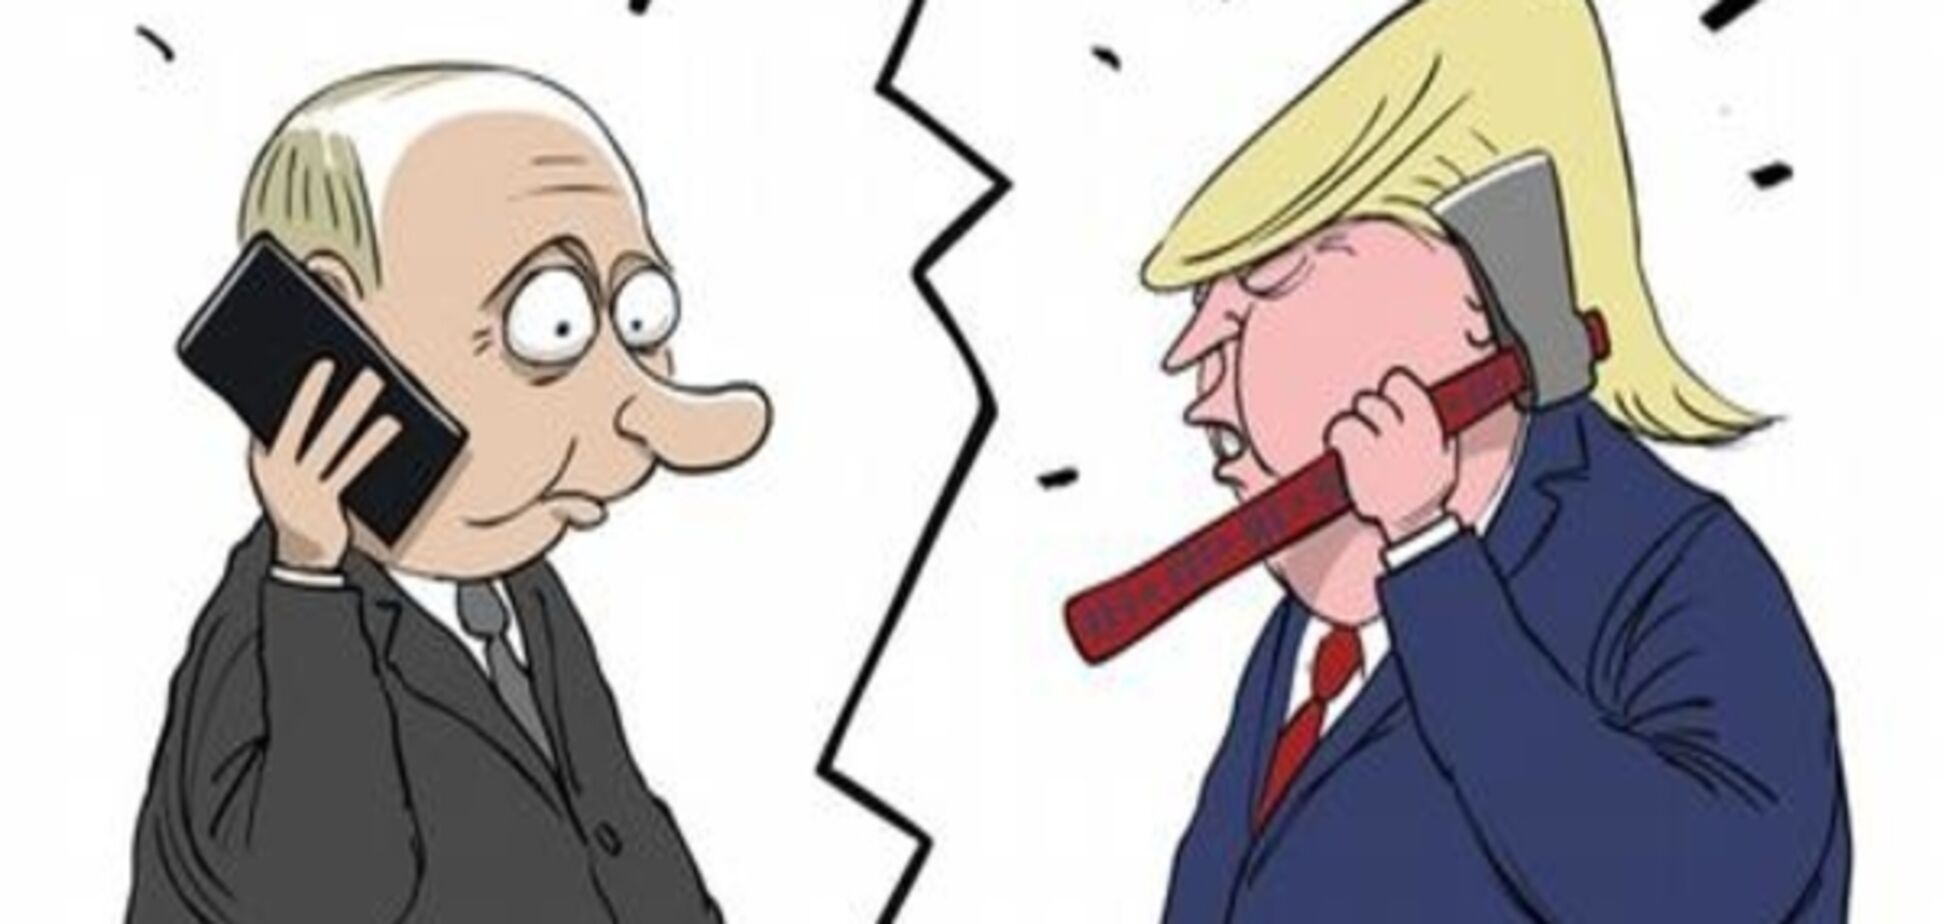 'У каждого свой гаджет': карикатурист высмеял разговор Трампа и Путина